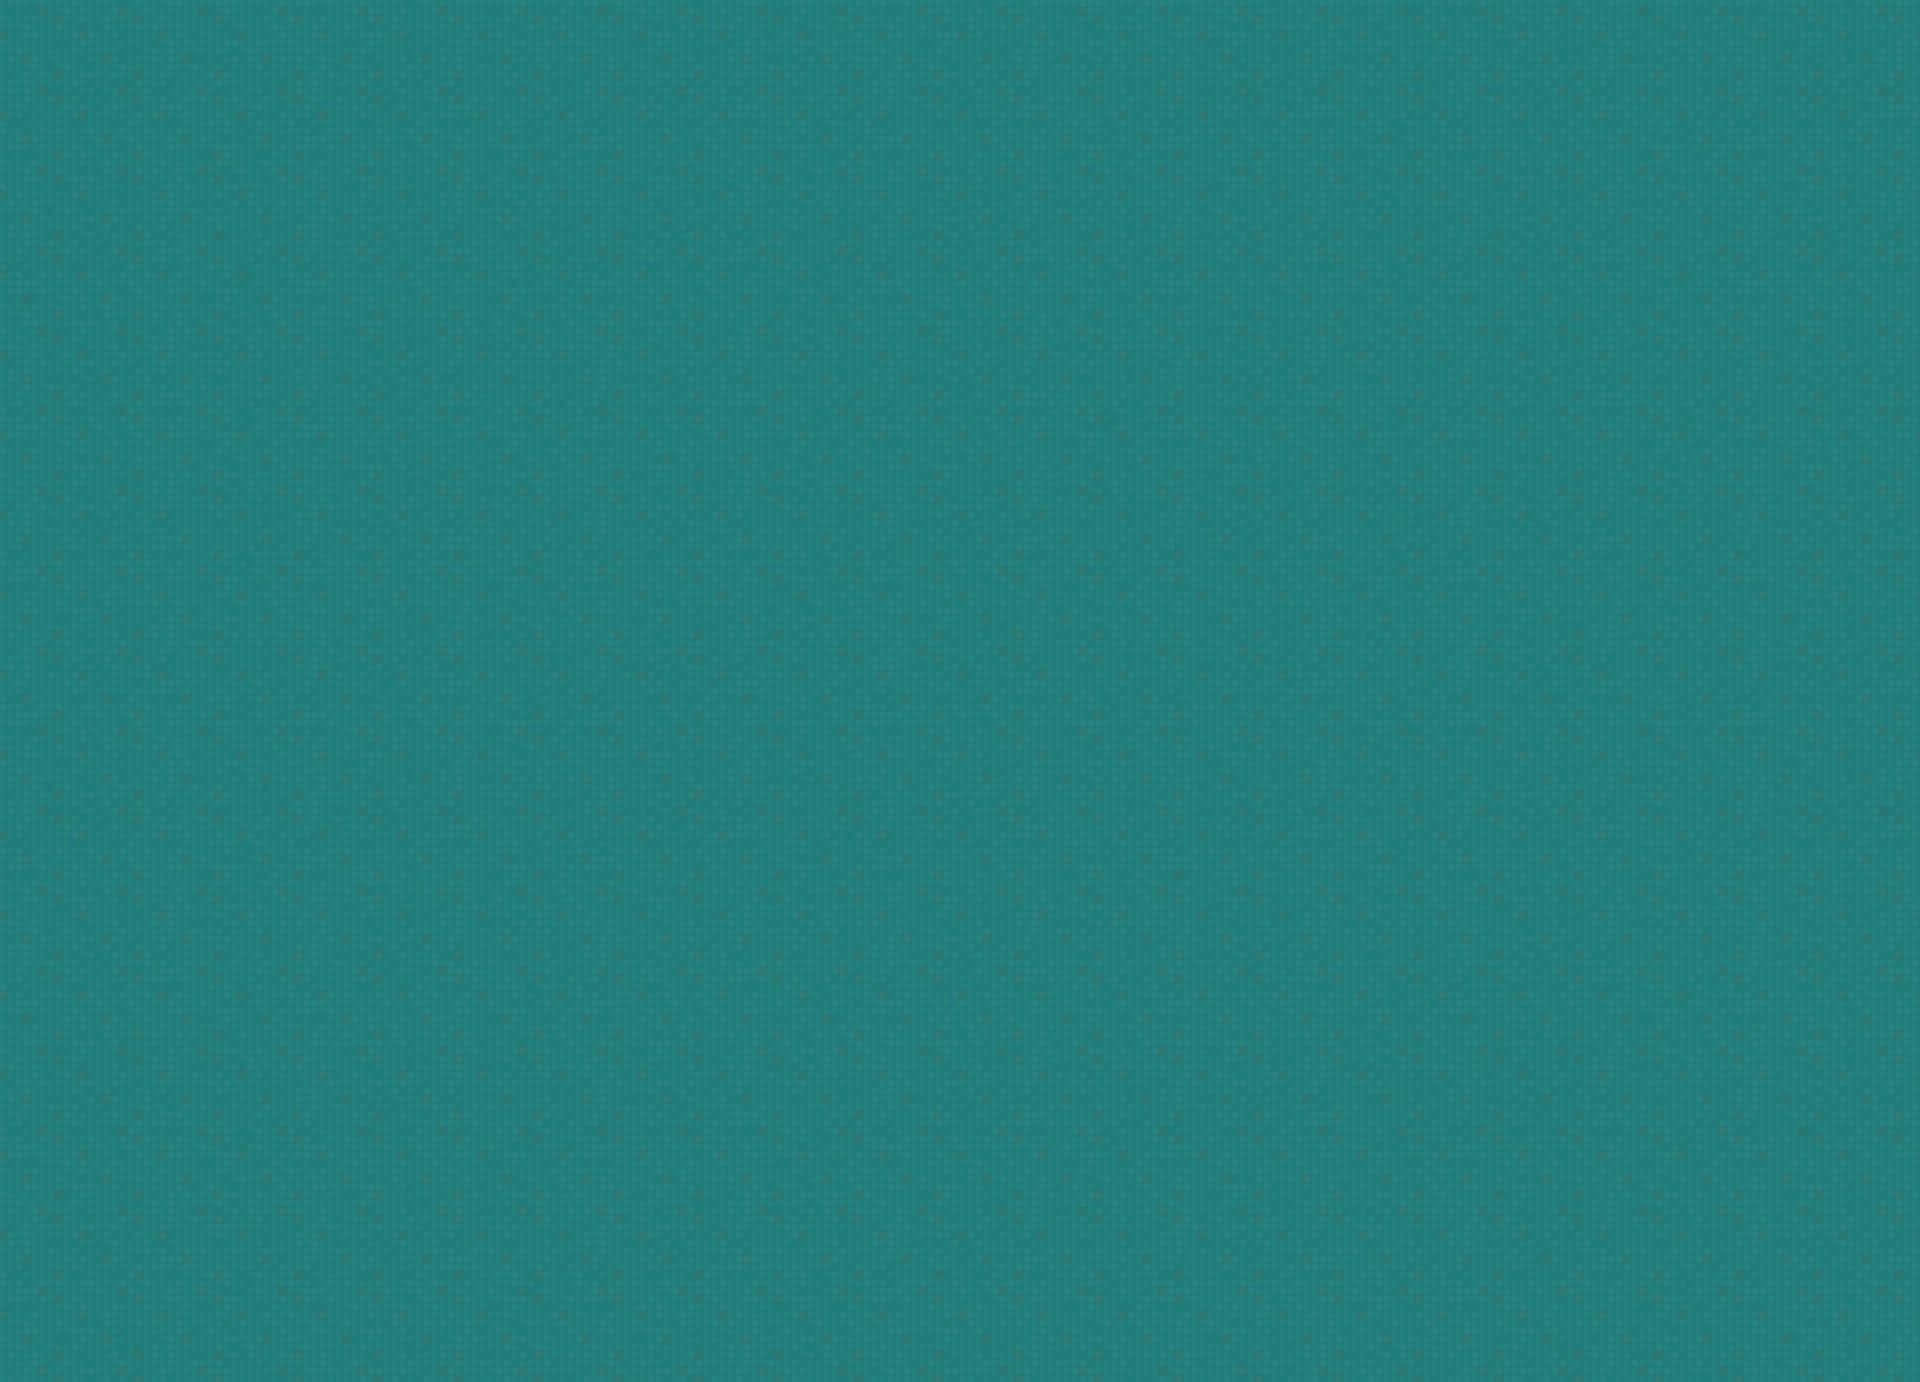 Fundoem Tom De Azul-escuro De 1920 X 1382 Pixels